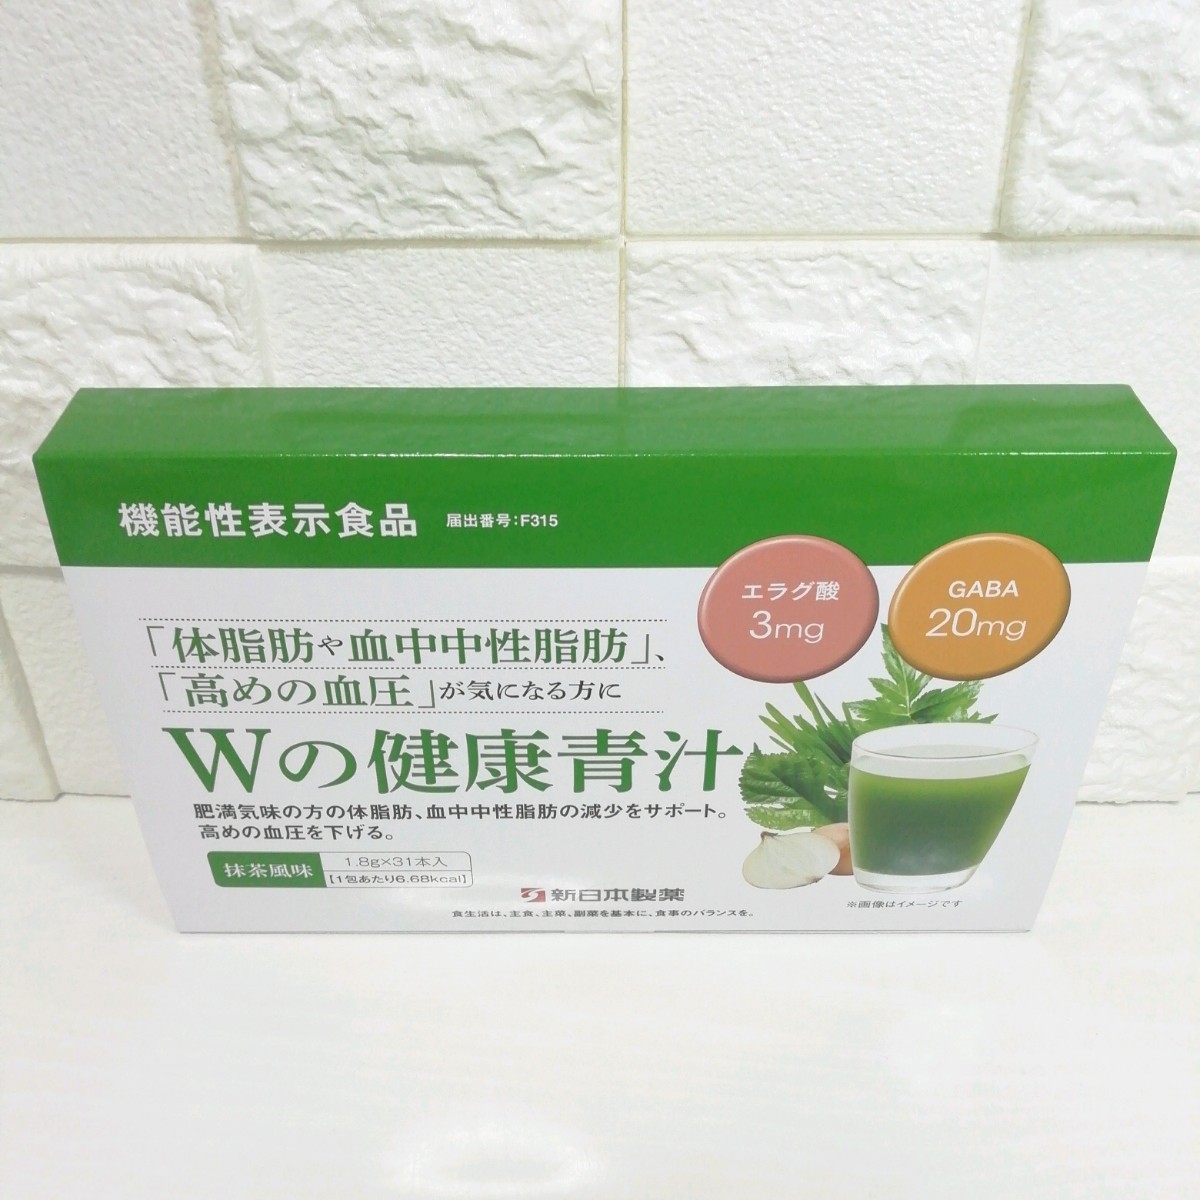 お買い得モデル 新日本製薬 生活習慣サポート Wの健康青汁 機能性表示